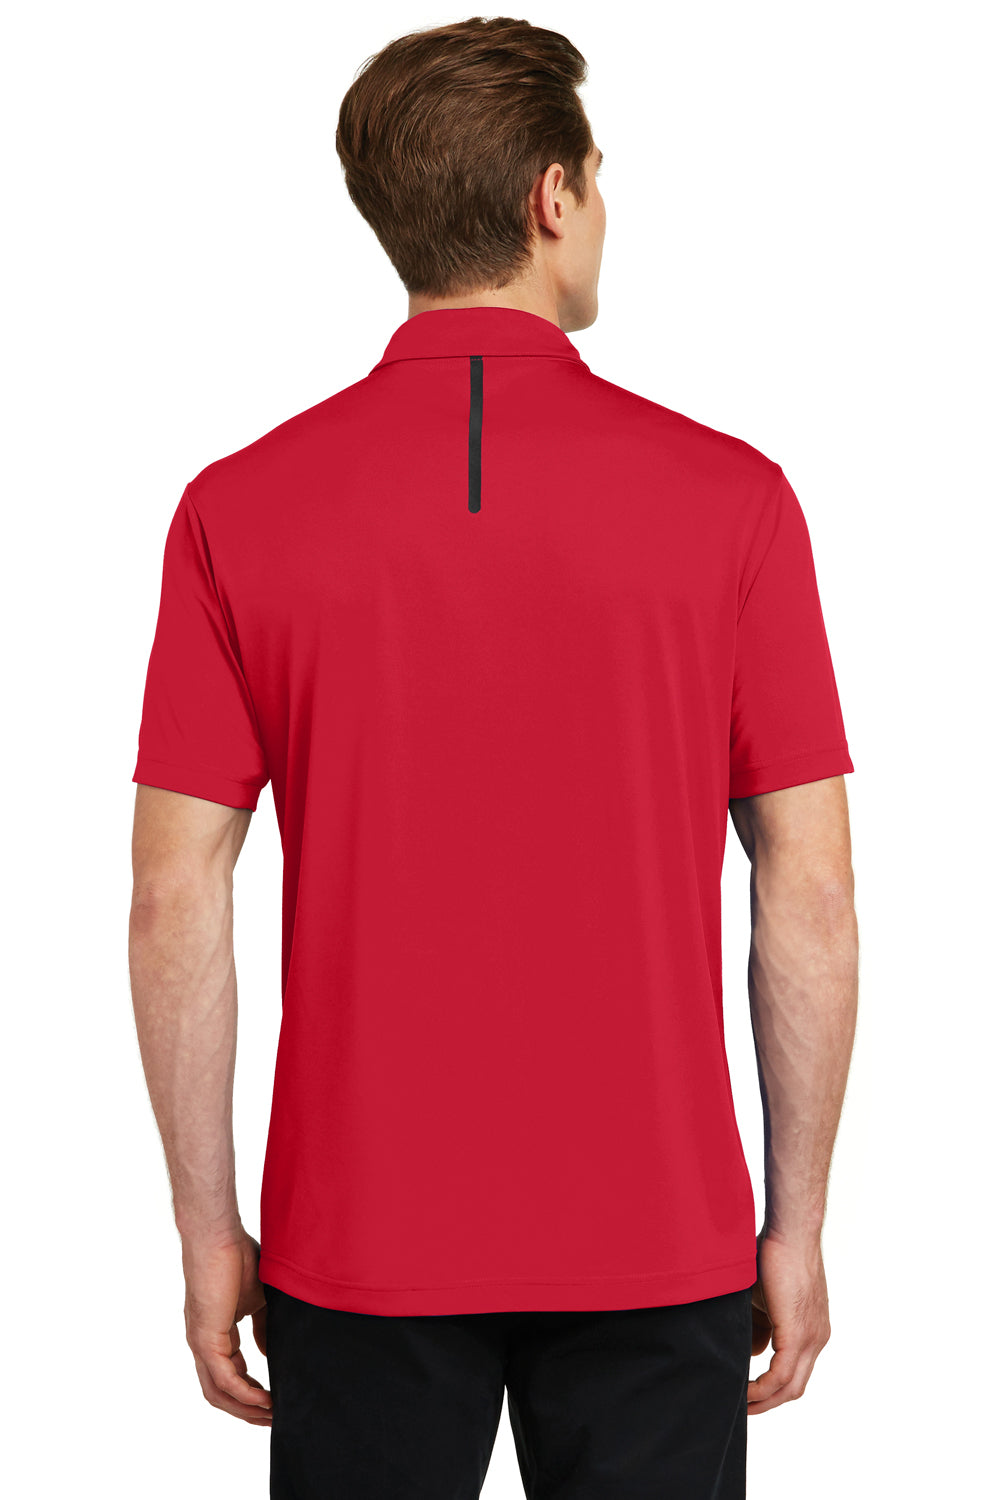 Sport-Tek ST620 Mens Tough Moisture Wicking Short Sleeve Polo Shirt Red/Black Back